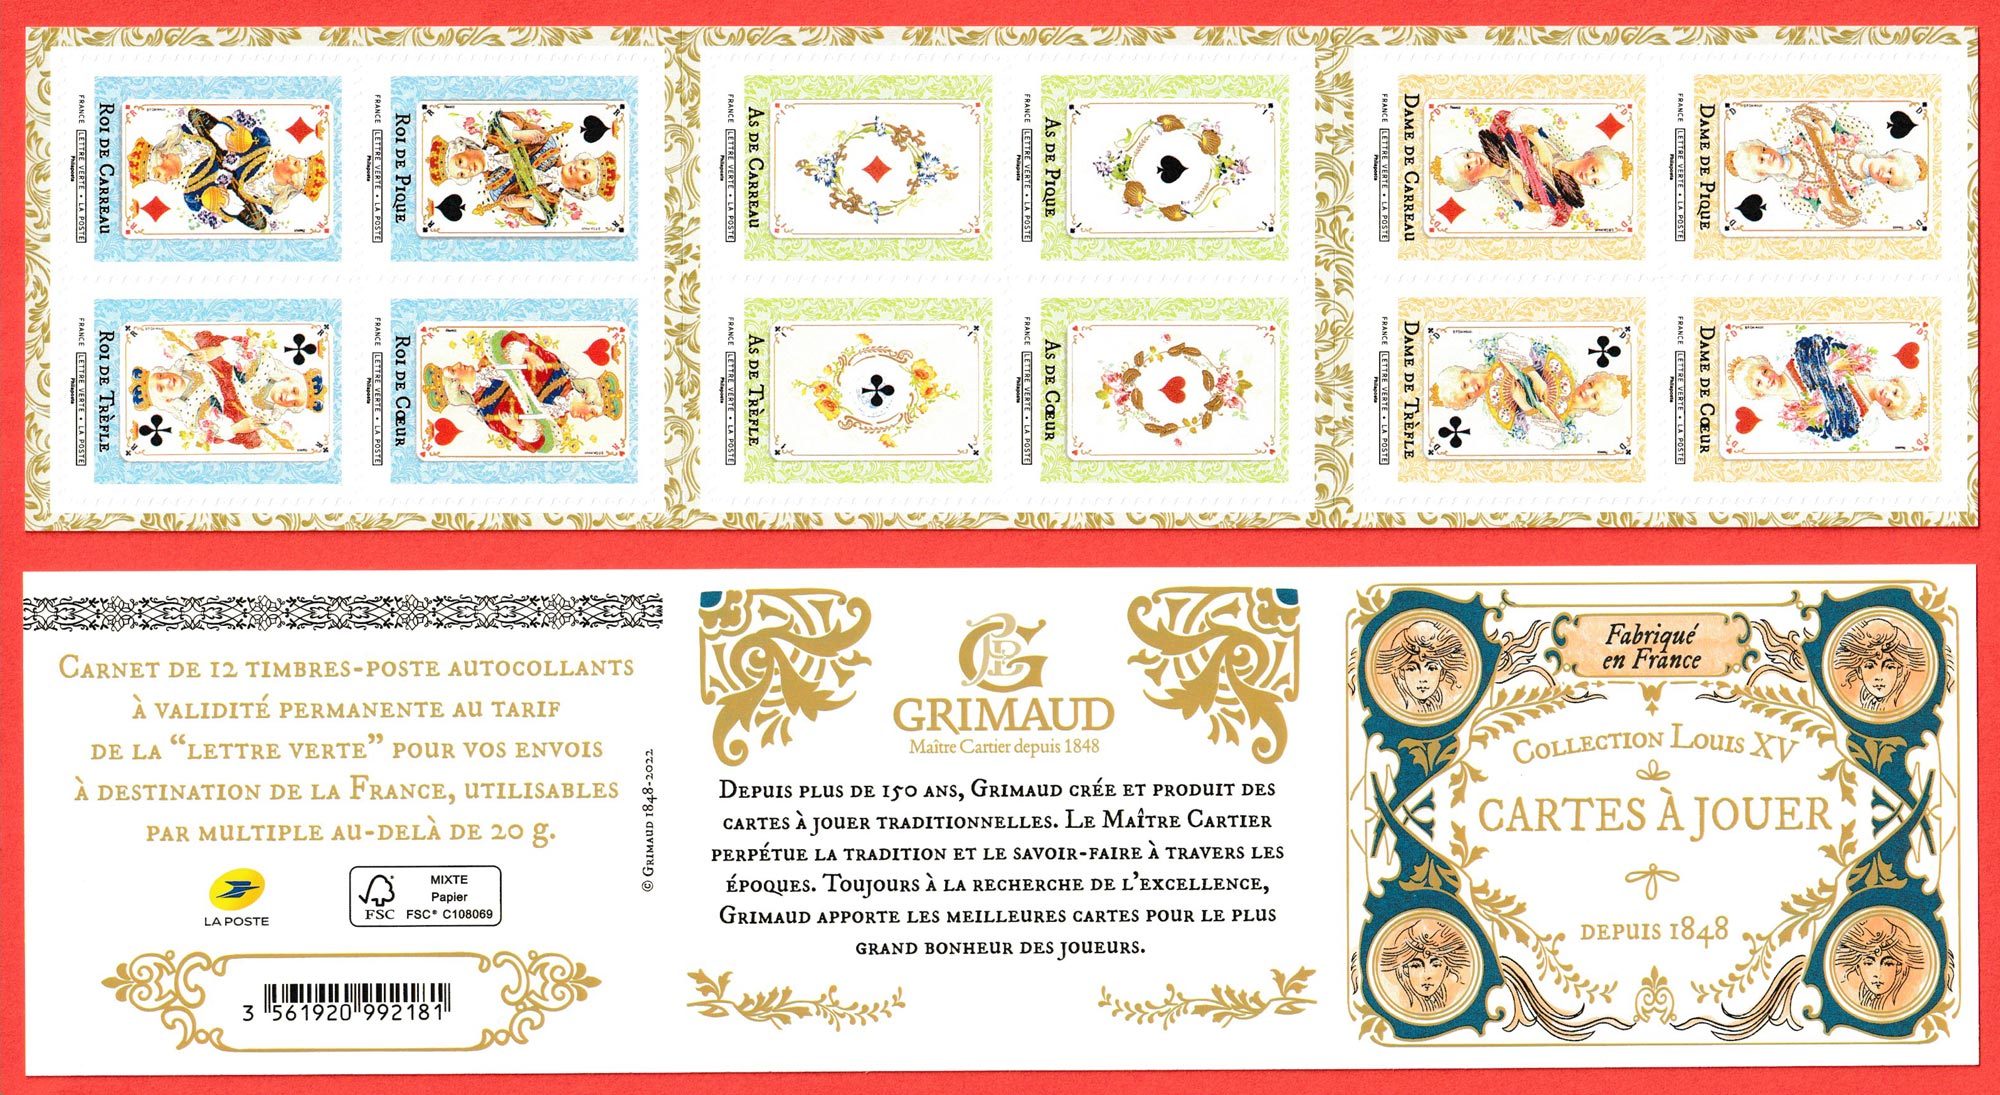 Carnet de 12 timbres - Collection Louis XV de cartes à jouer - Lettre Verte  - La Poste